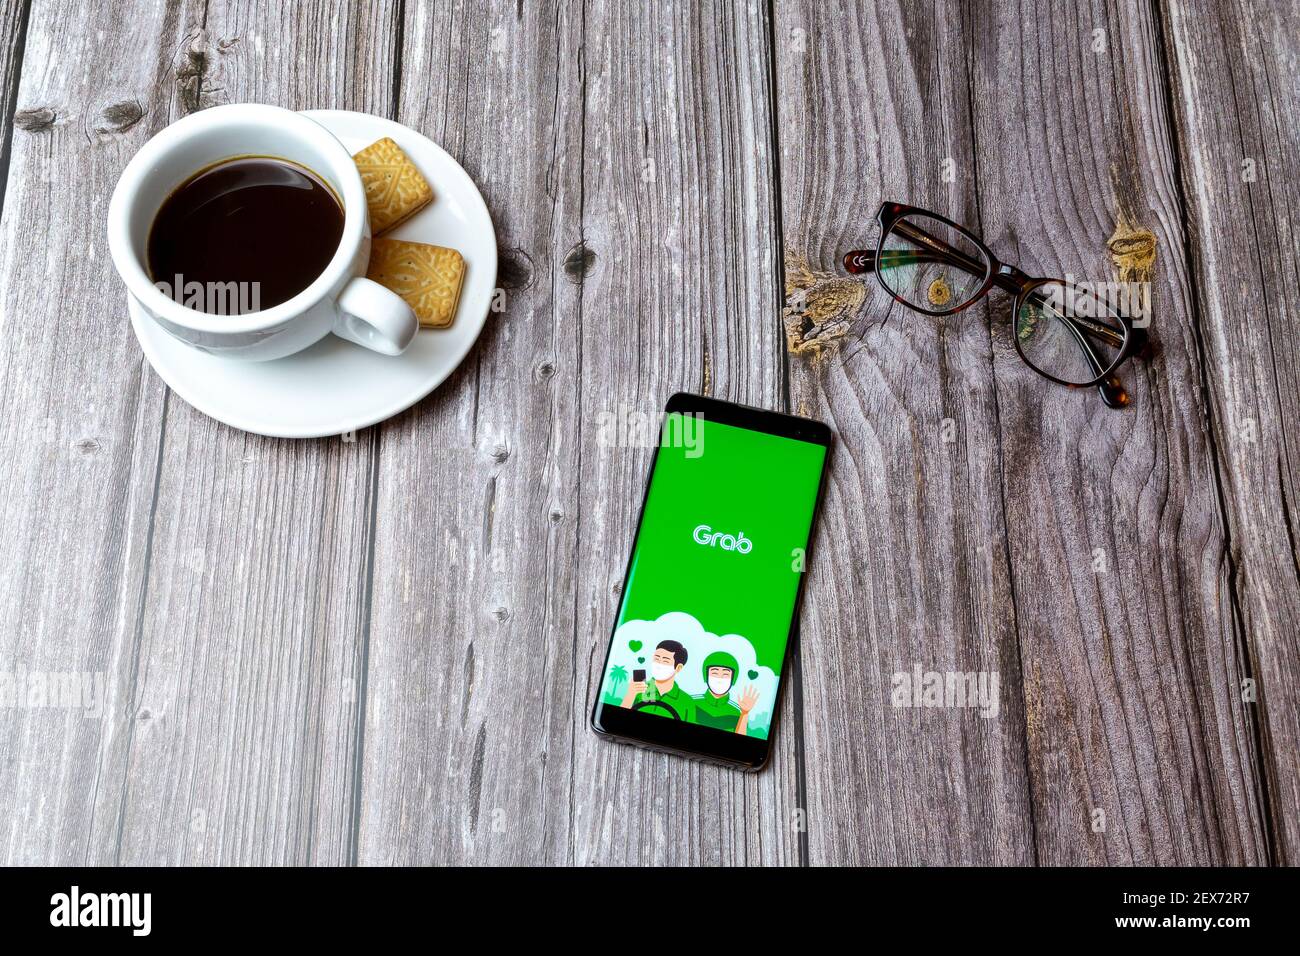 Un telefono cellulare o un telefono cellulare posato su un legno Tavolo con l'app per la consegna degli alimenti con la benna aperta accanto a. un caffè Foto Stock